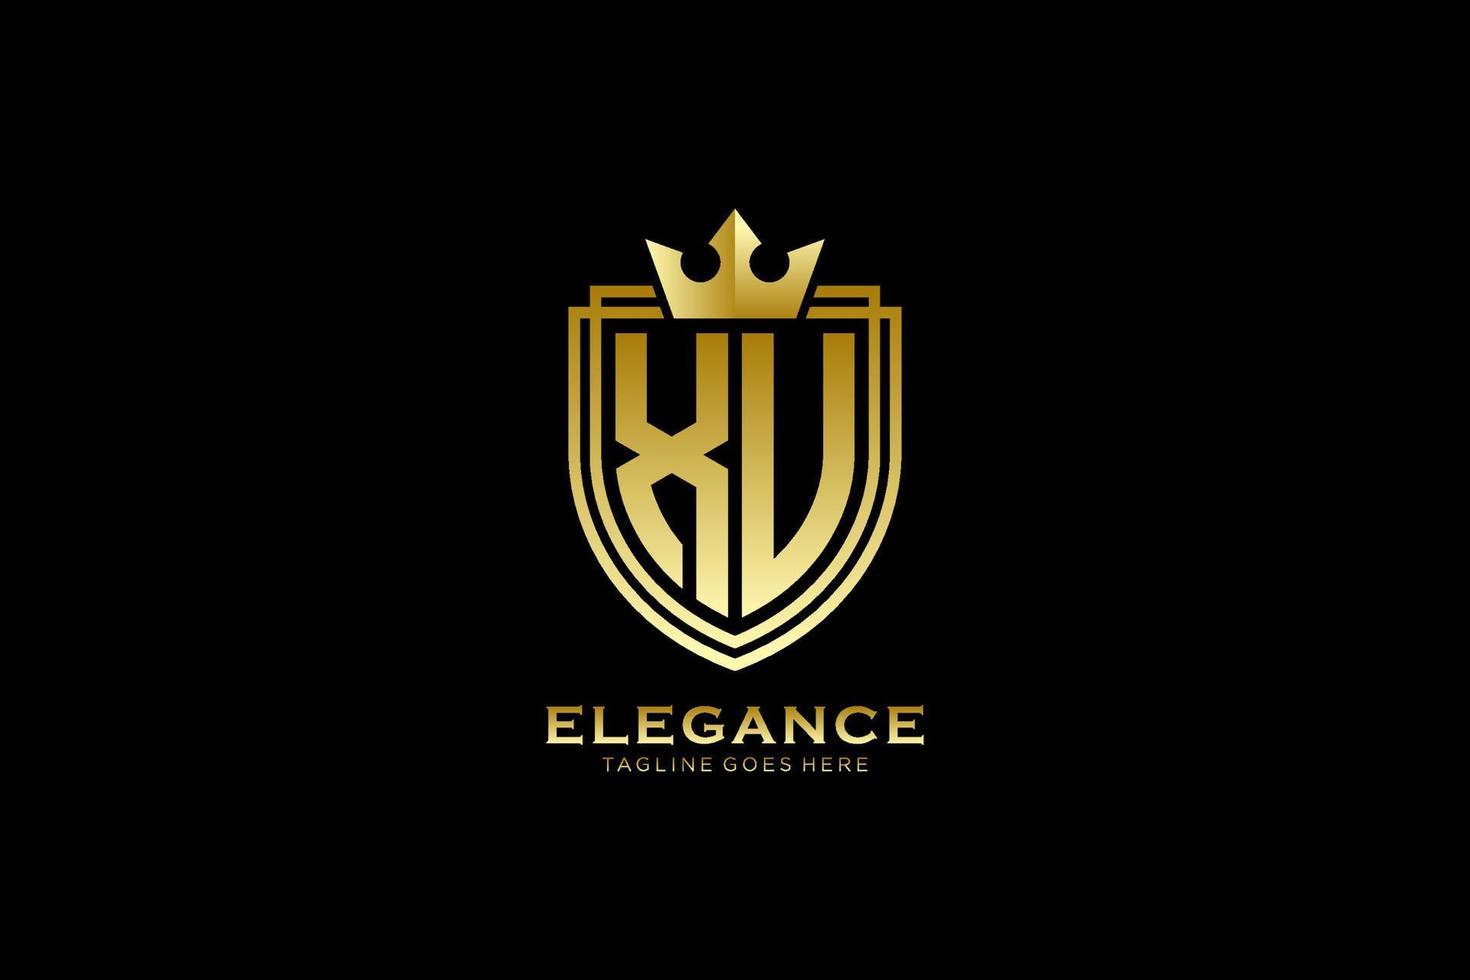 logotipo de monograma de lujo inicial xu elegante o plantilla de placa con pergaminos y corona real - perfecto para proyectos de marca de lujo vector